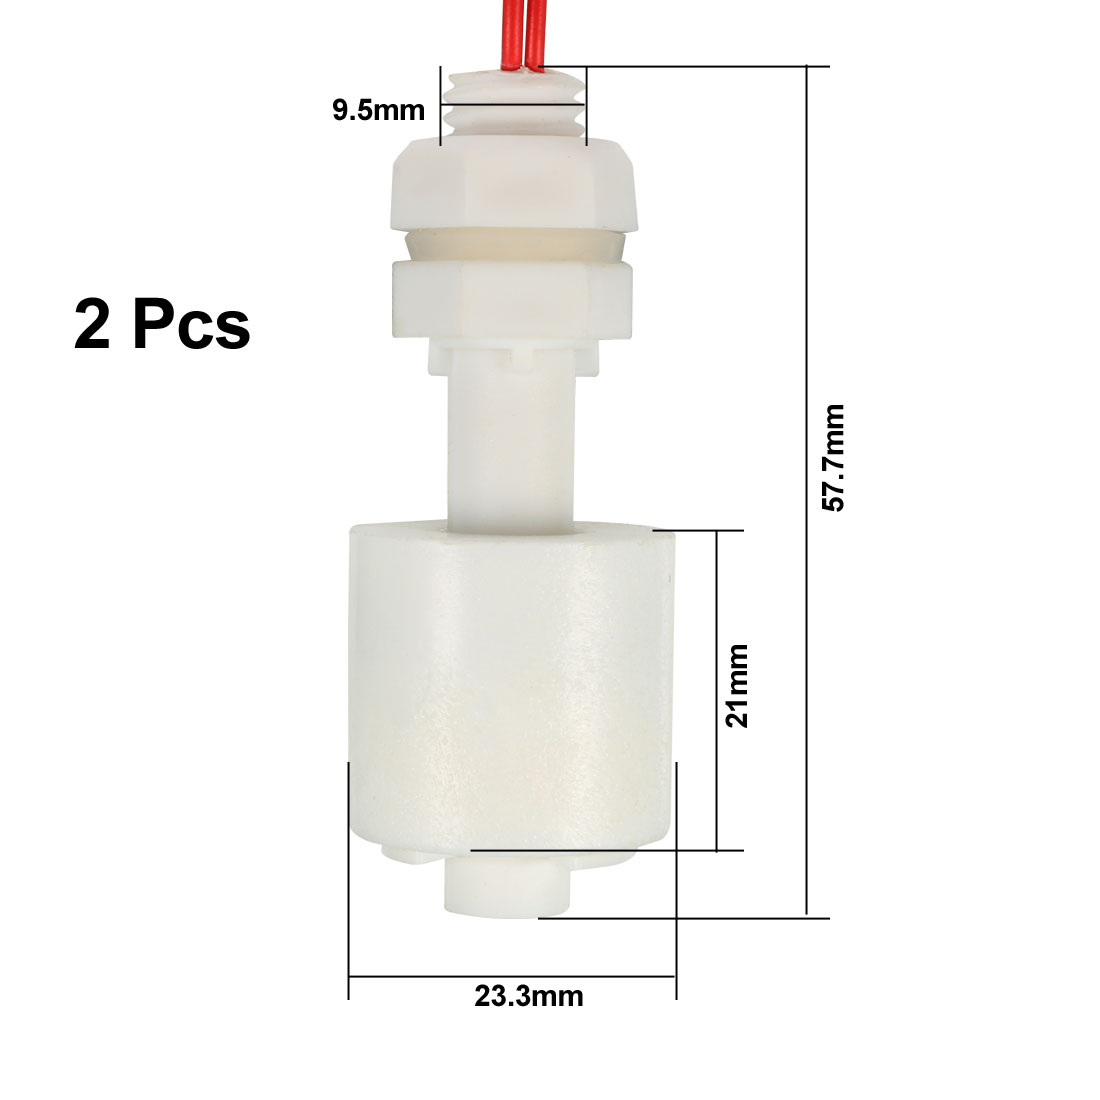 Unique Bargains 2 Pieces ZP4510 White Plastic Liquid Water Level Sensor Float Floating Switch